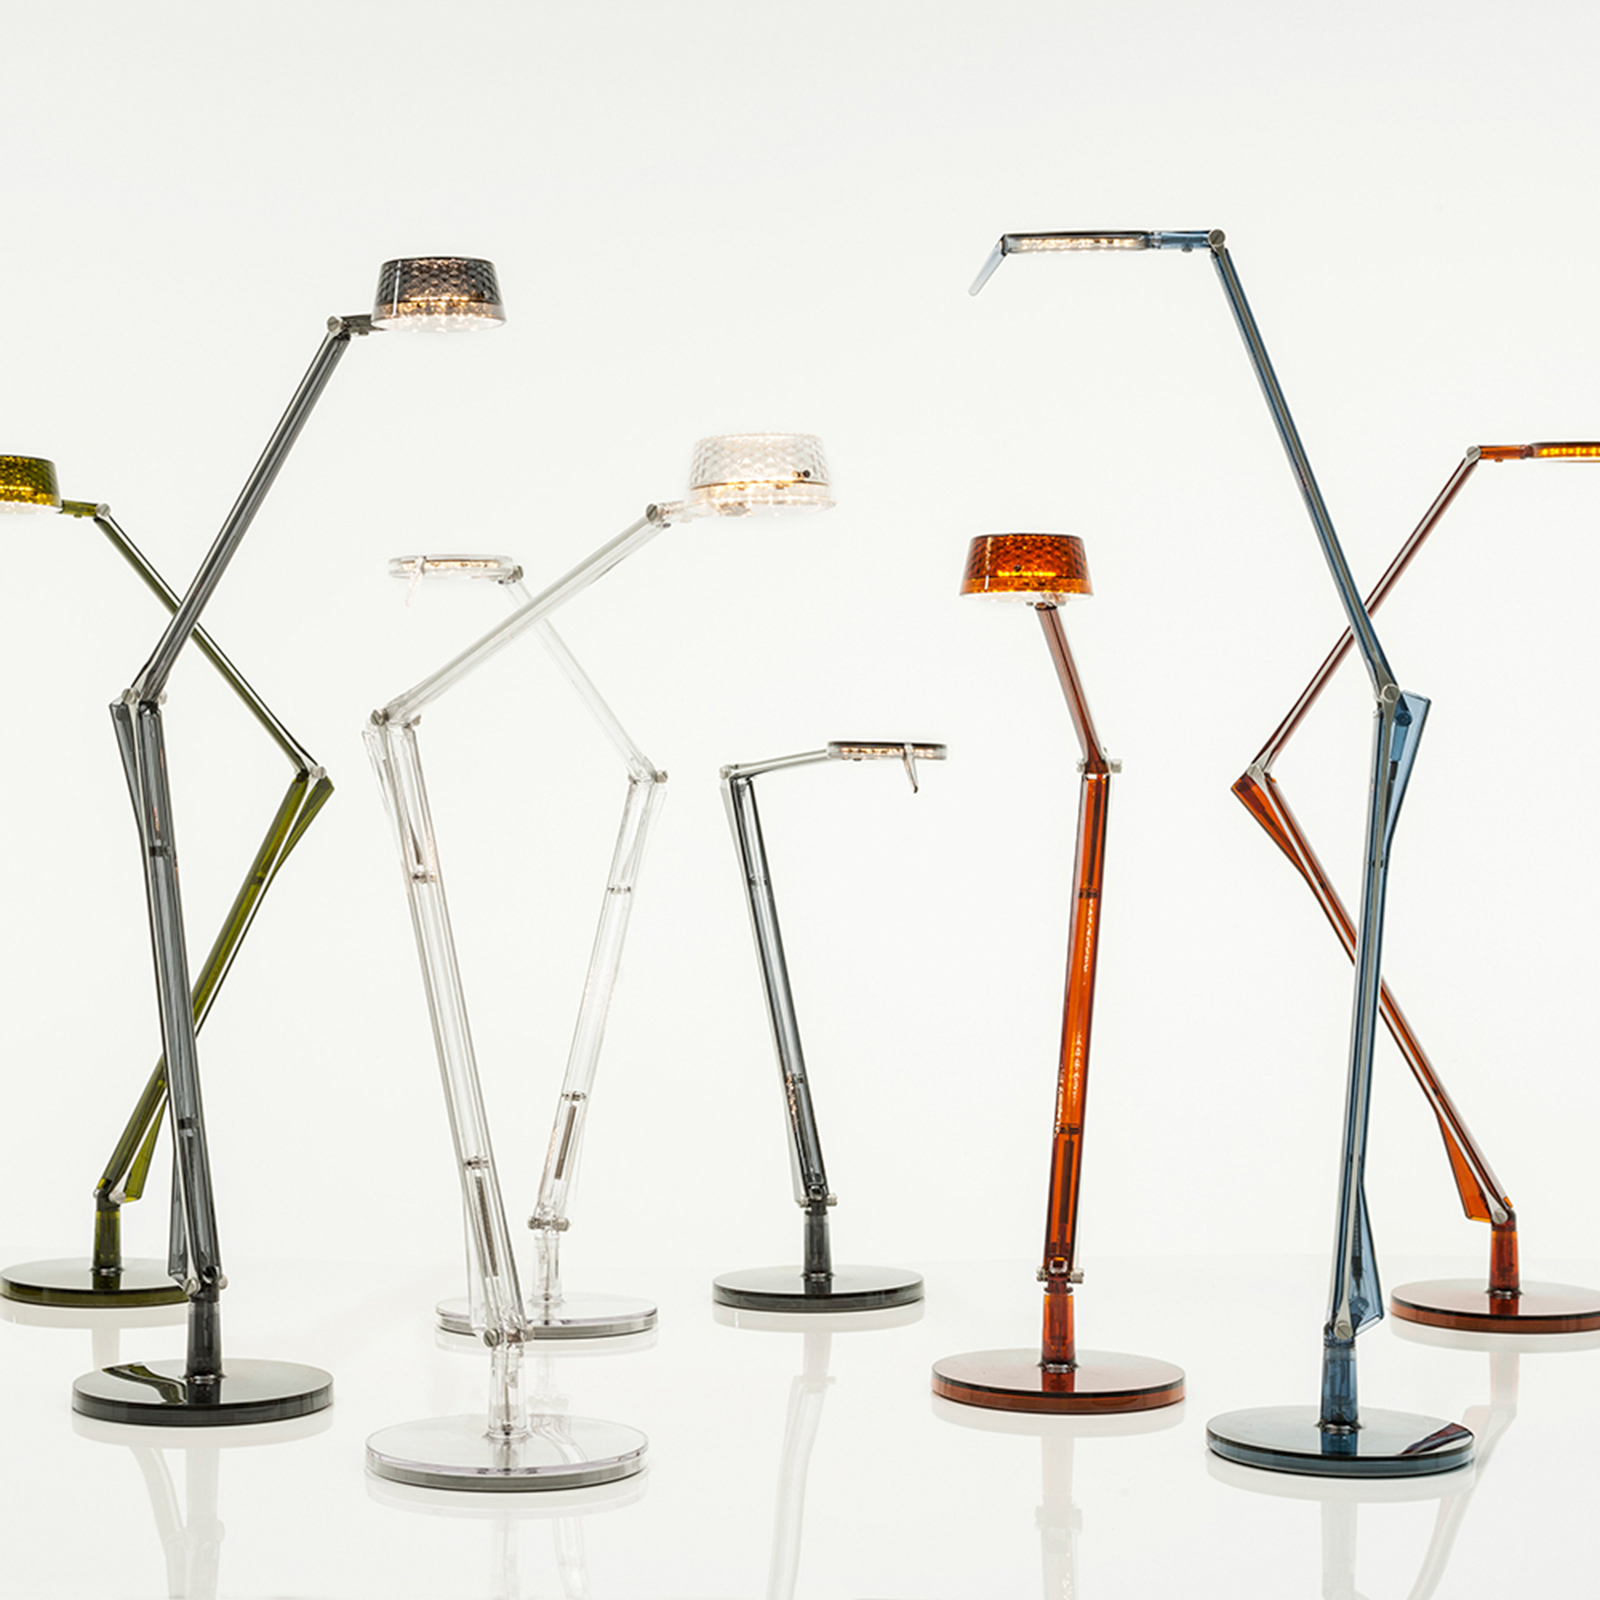 Kartell Aledin Dec – stolná LED lampa, priehľadná